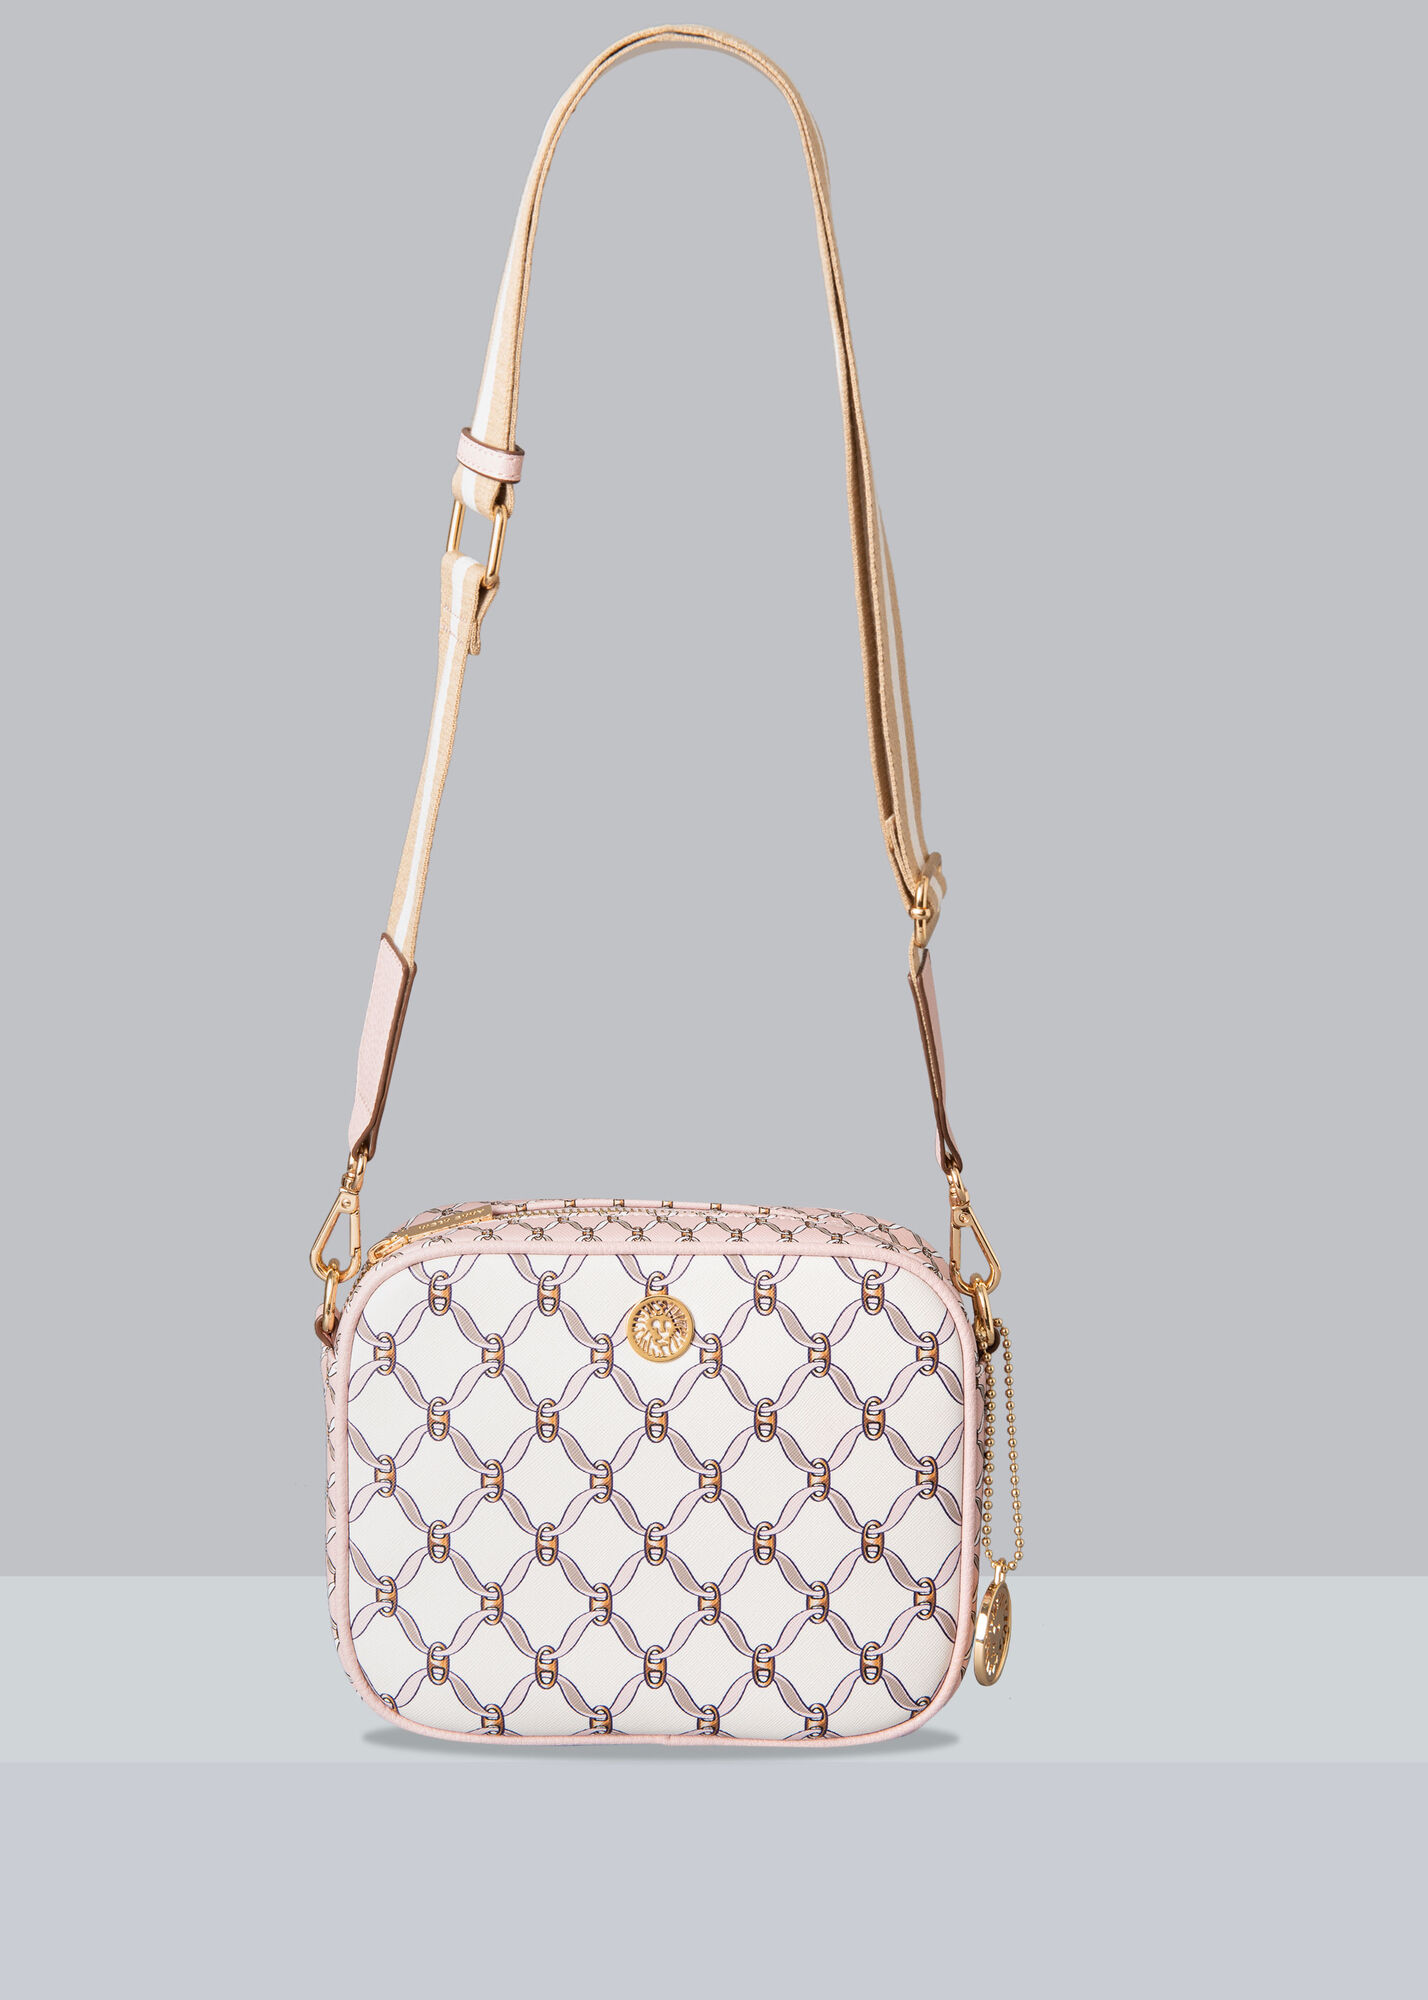 Gemini Link Canvas Mini Bag: Women's Handbags, Crossbody Bags